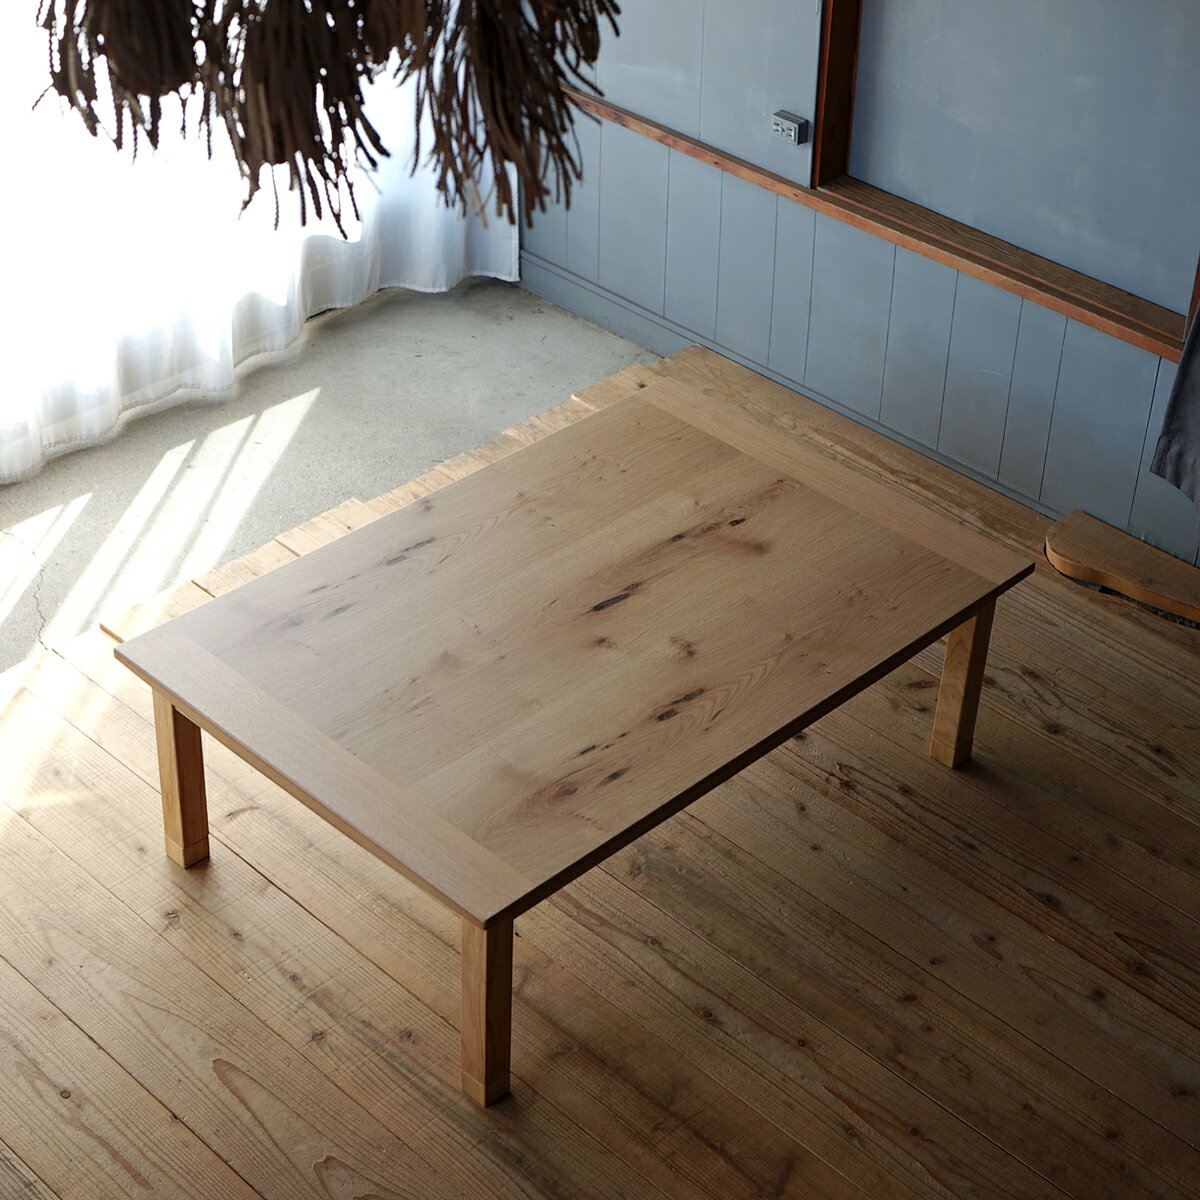 Auderyこたつ テーブル 120 80 長方形 ナラ 節入り突板|北欧|モダン|シンプル|デザイン||おしゃれ|かわいい||日本製|こたつ|コタツ|座卓||国産こたつ|国産コタツ|センターテーブル||リビングテ…